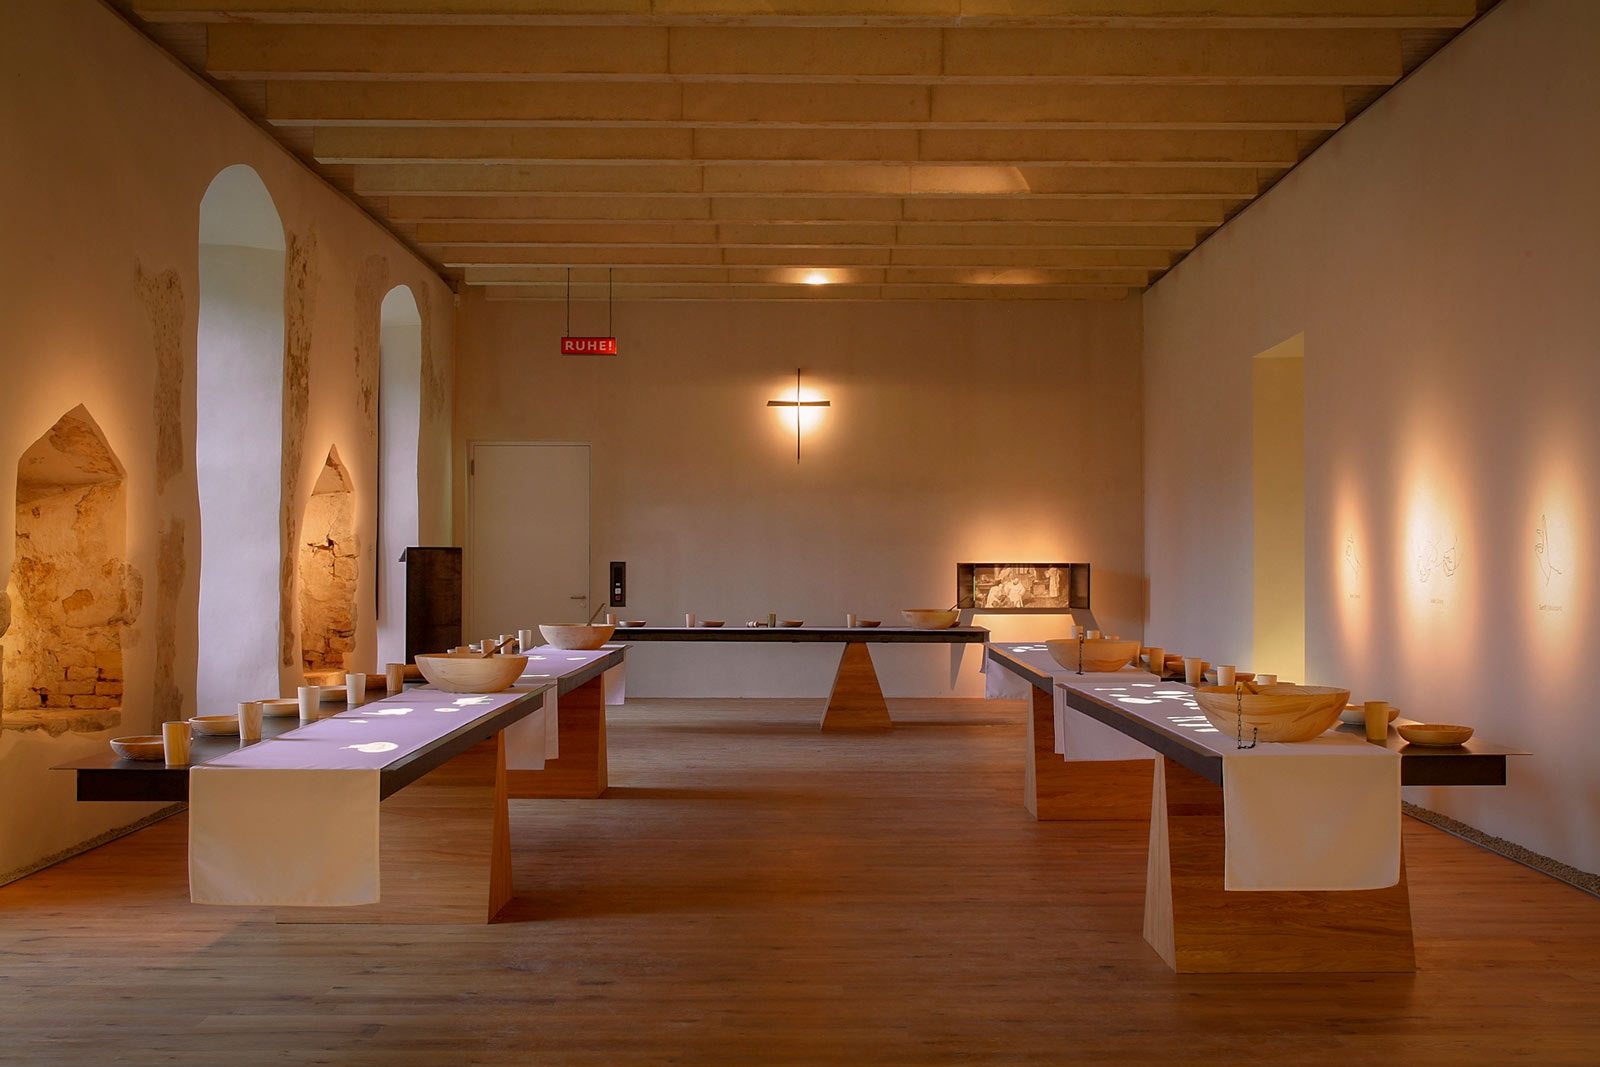 Das Referenzbild für Ausstellungsgestaltung aus der Dauerausstellung „Eingetreten – 1700 Jahre Klosterkultur“ zeigt eine Rauminszenierung mit einer Medienstation.